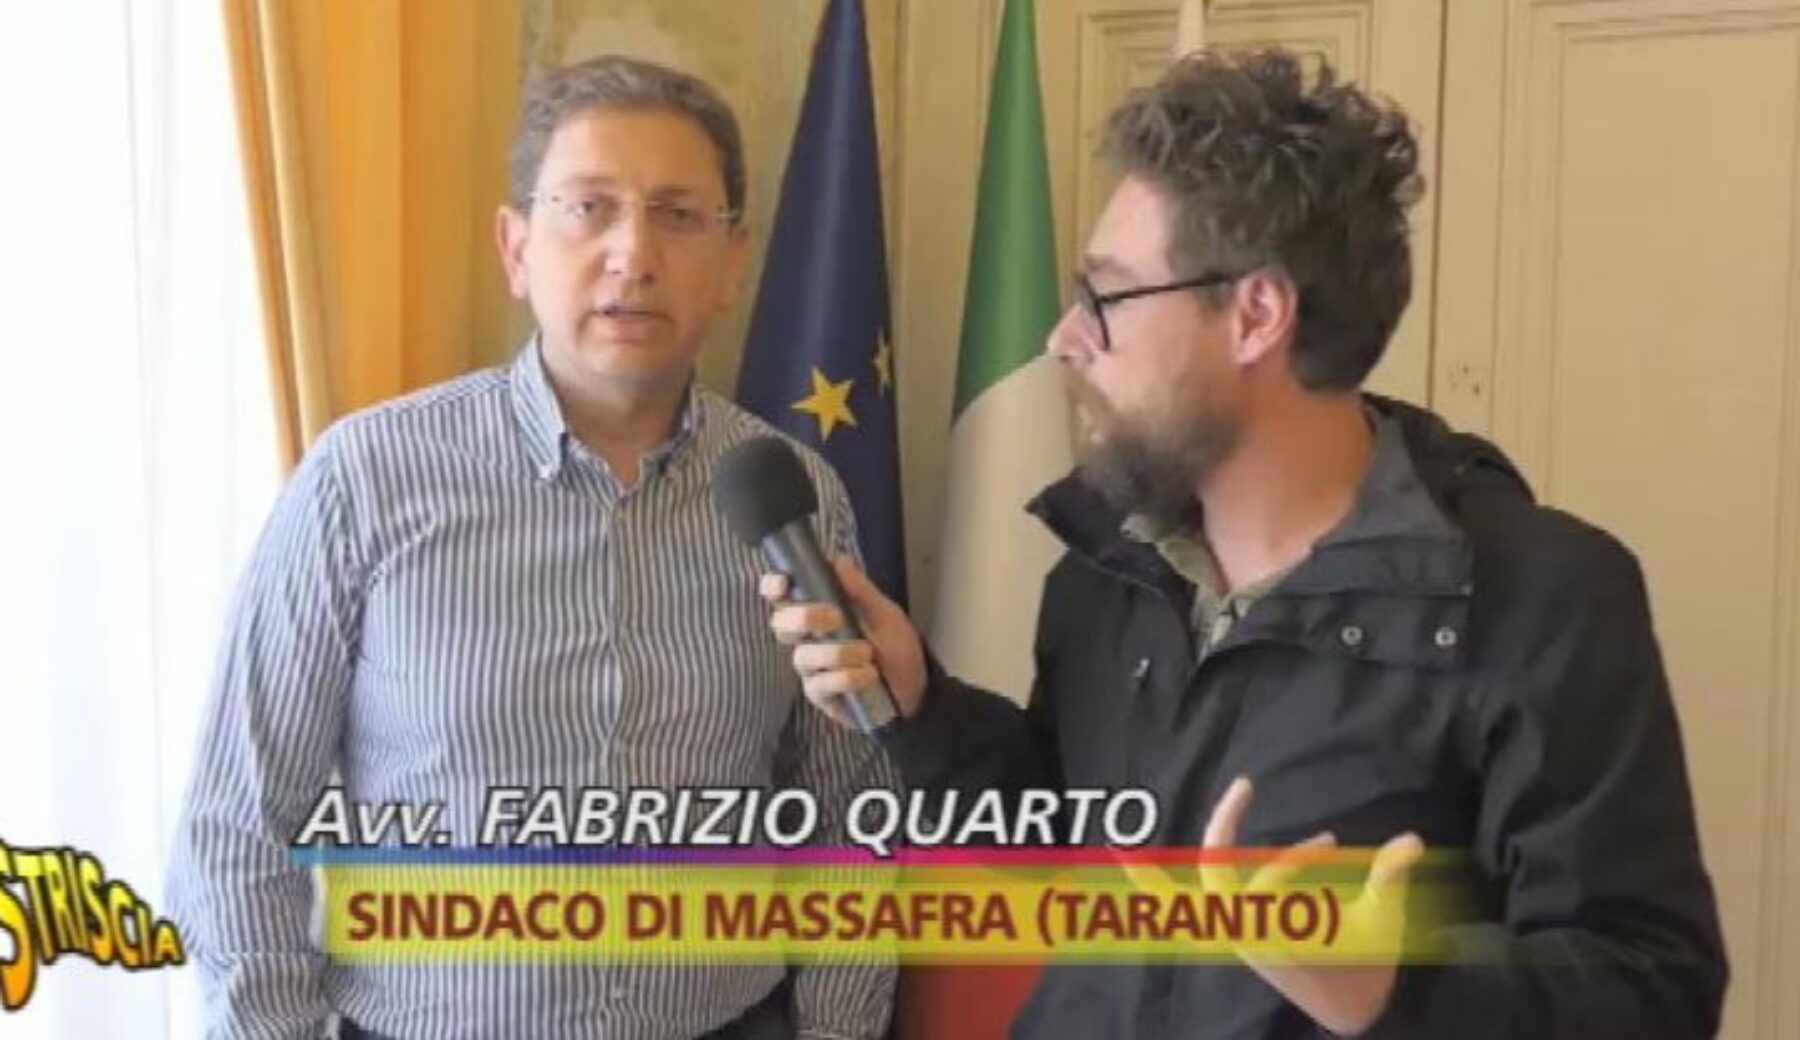 A Striscia la notizia appaltopoli pugliese:  parla il sindaco di Massafra